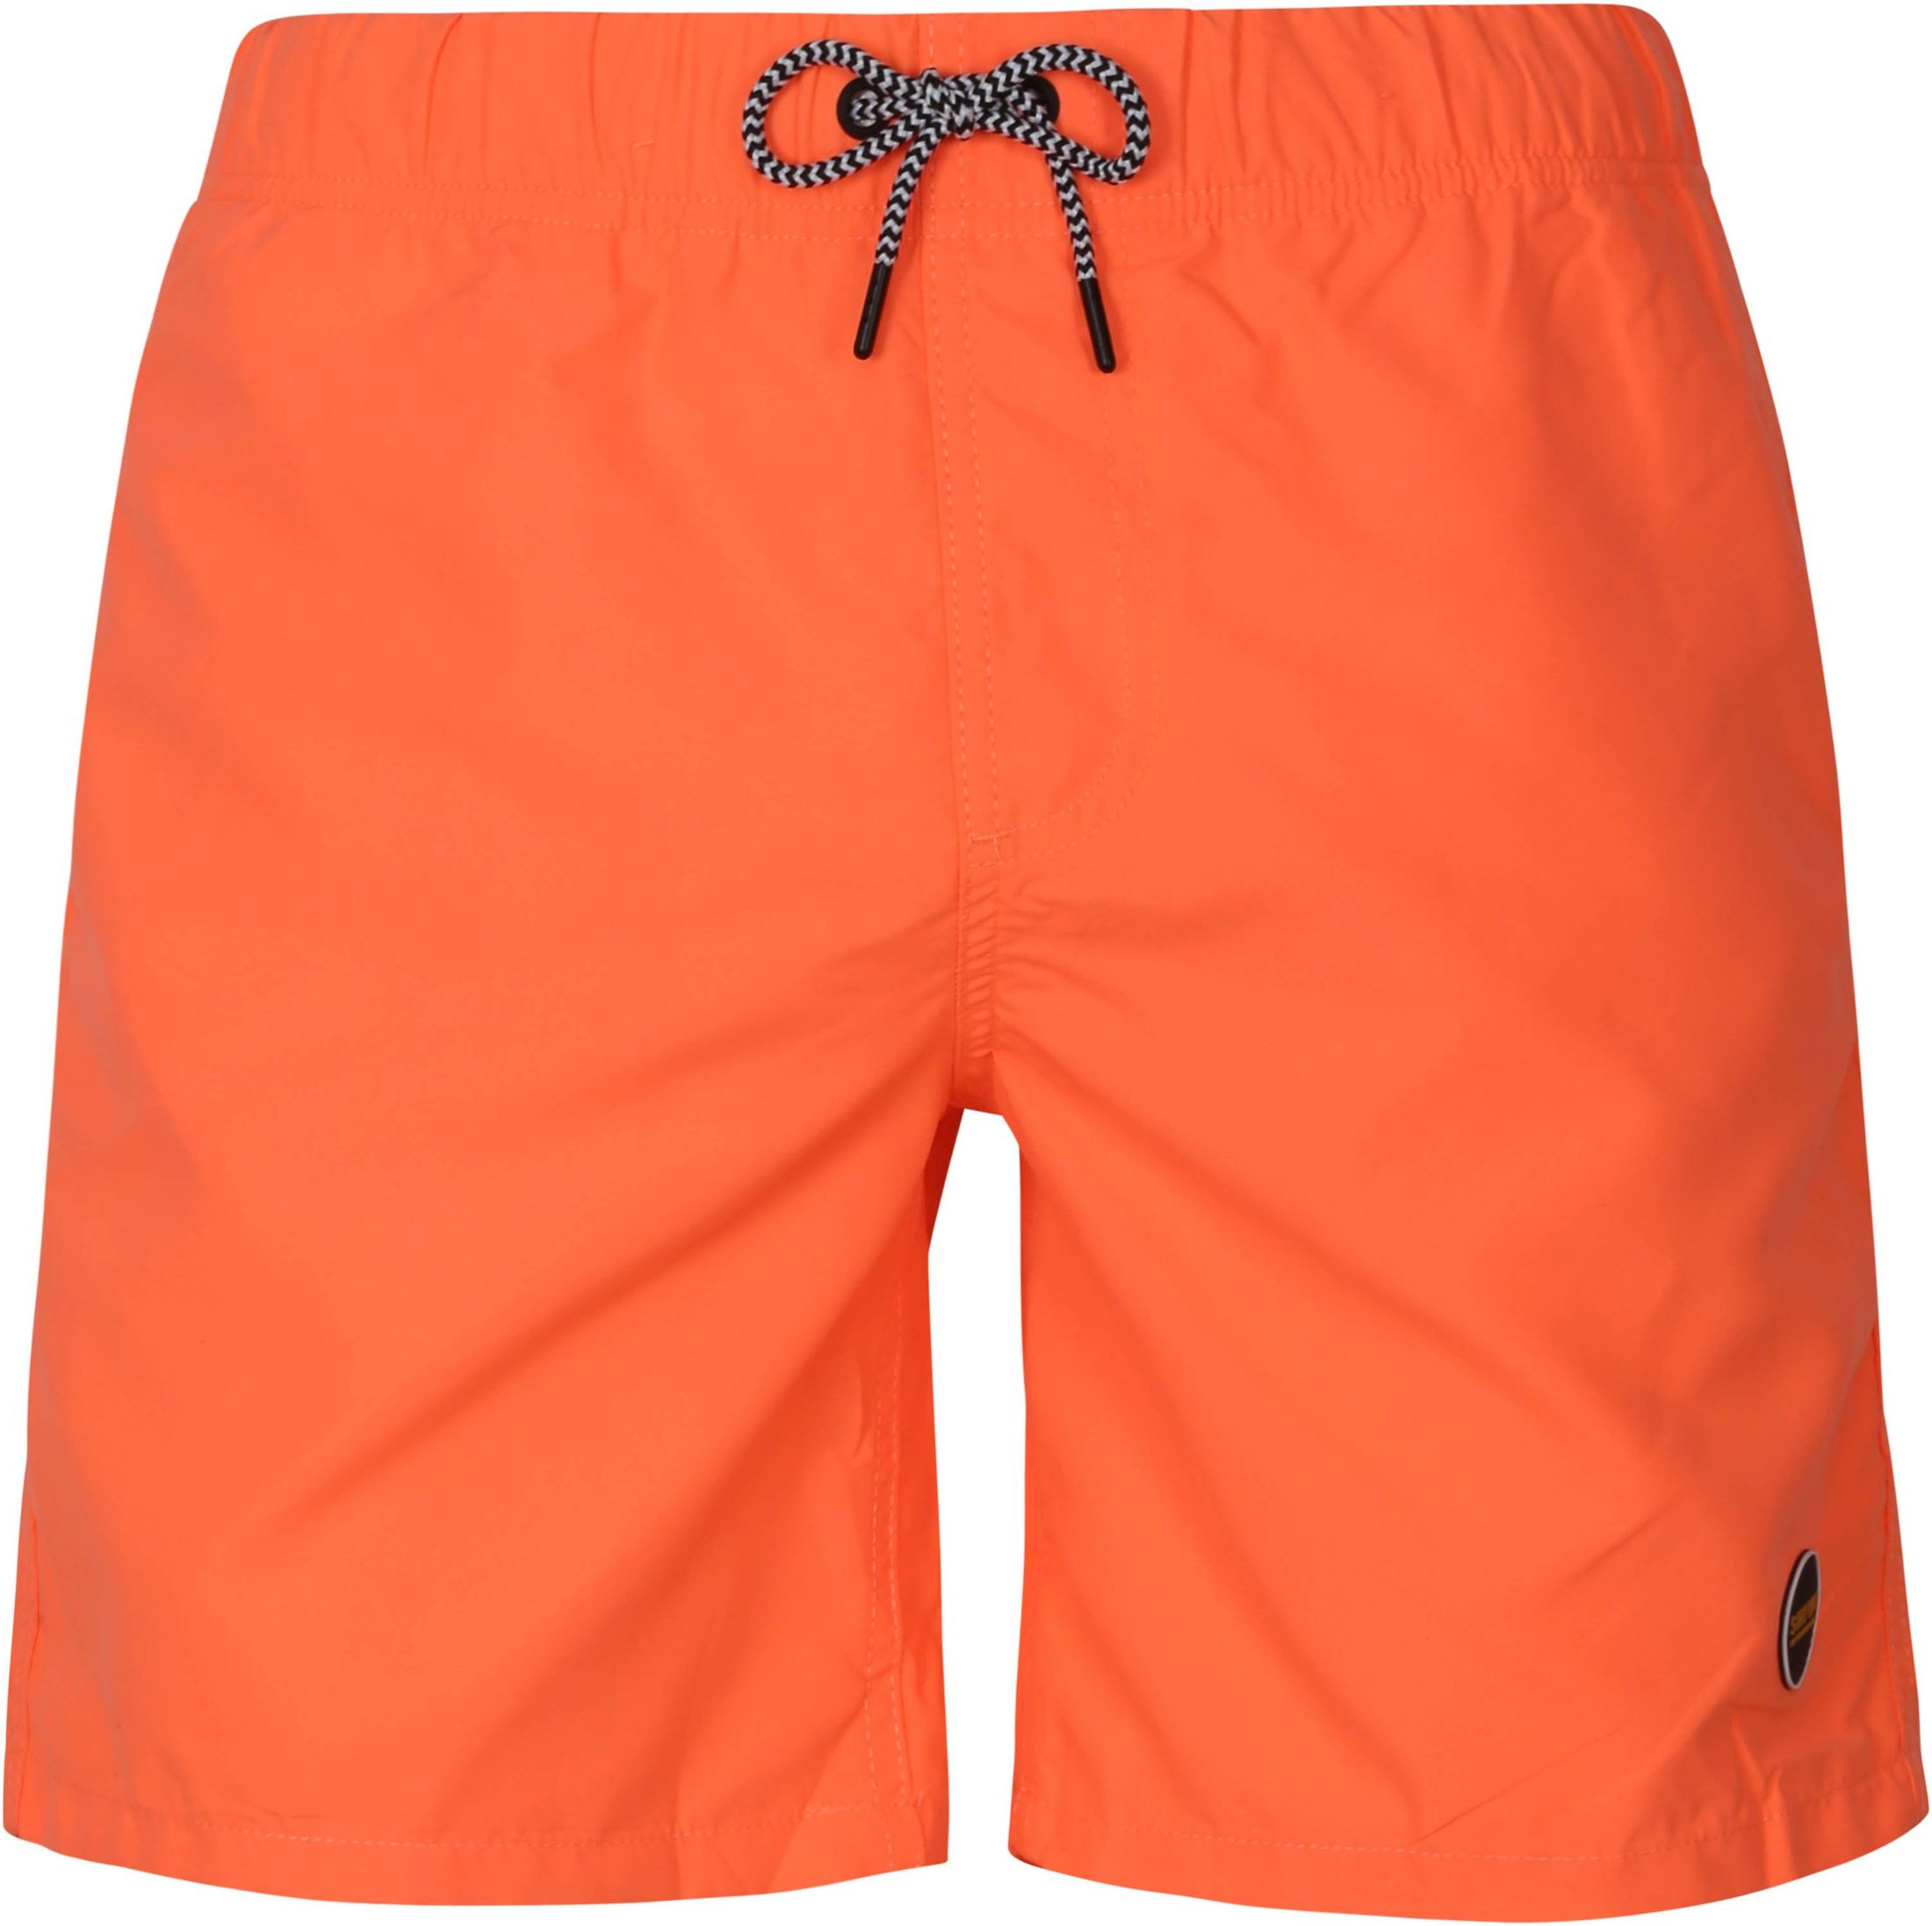 Shiwi Swimshorts Mike Orange size XL